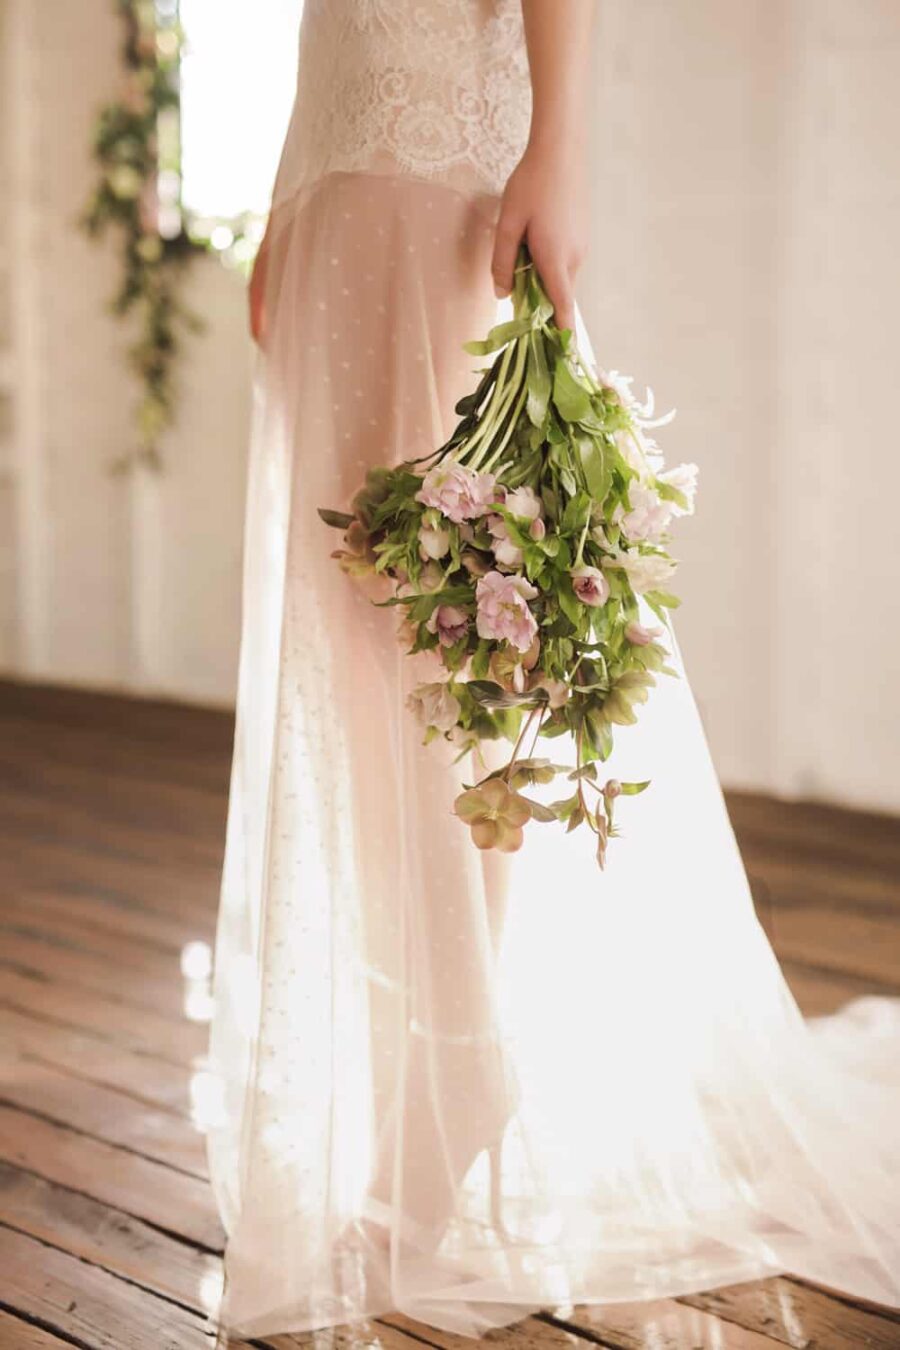 2017 bridal collection from Brisbane designer Jennifer Gifford